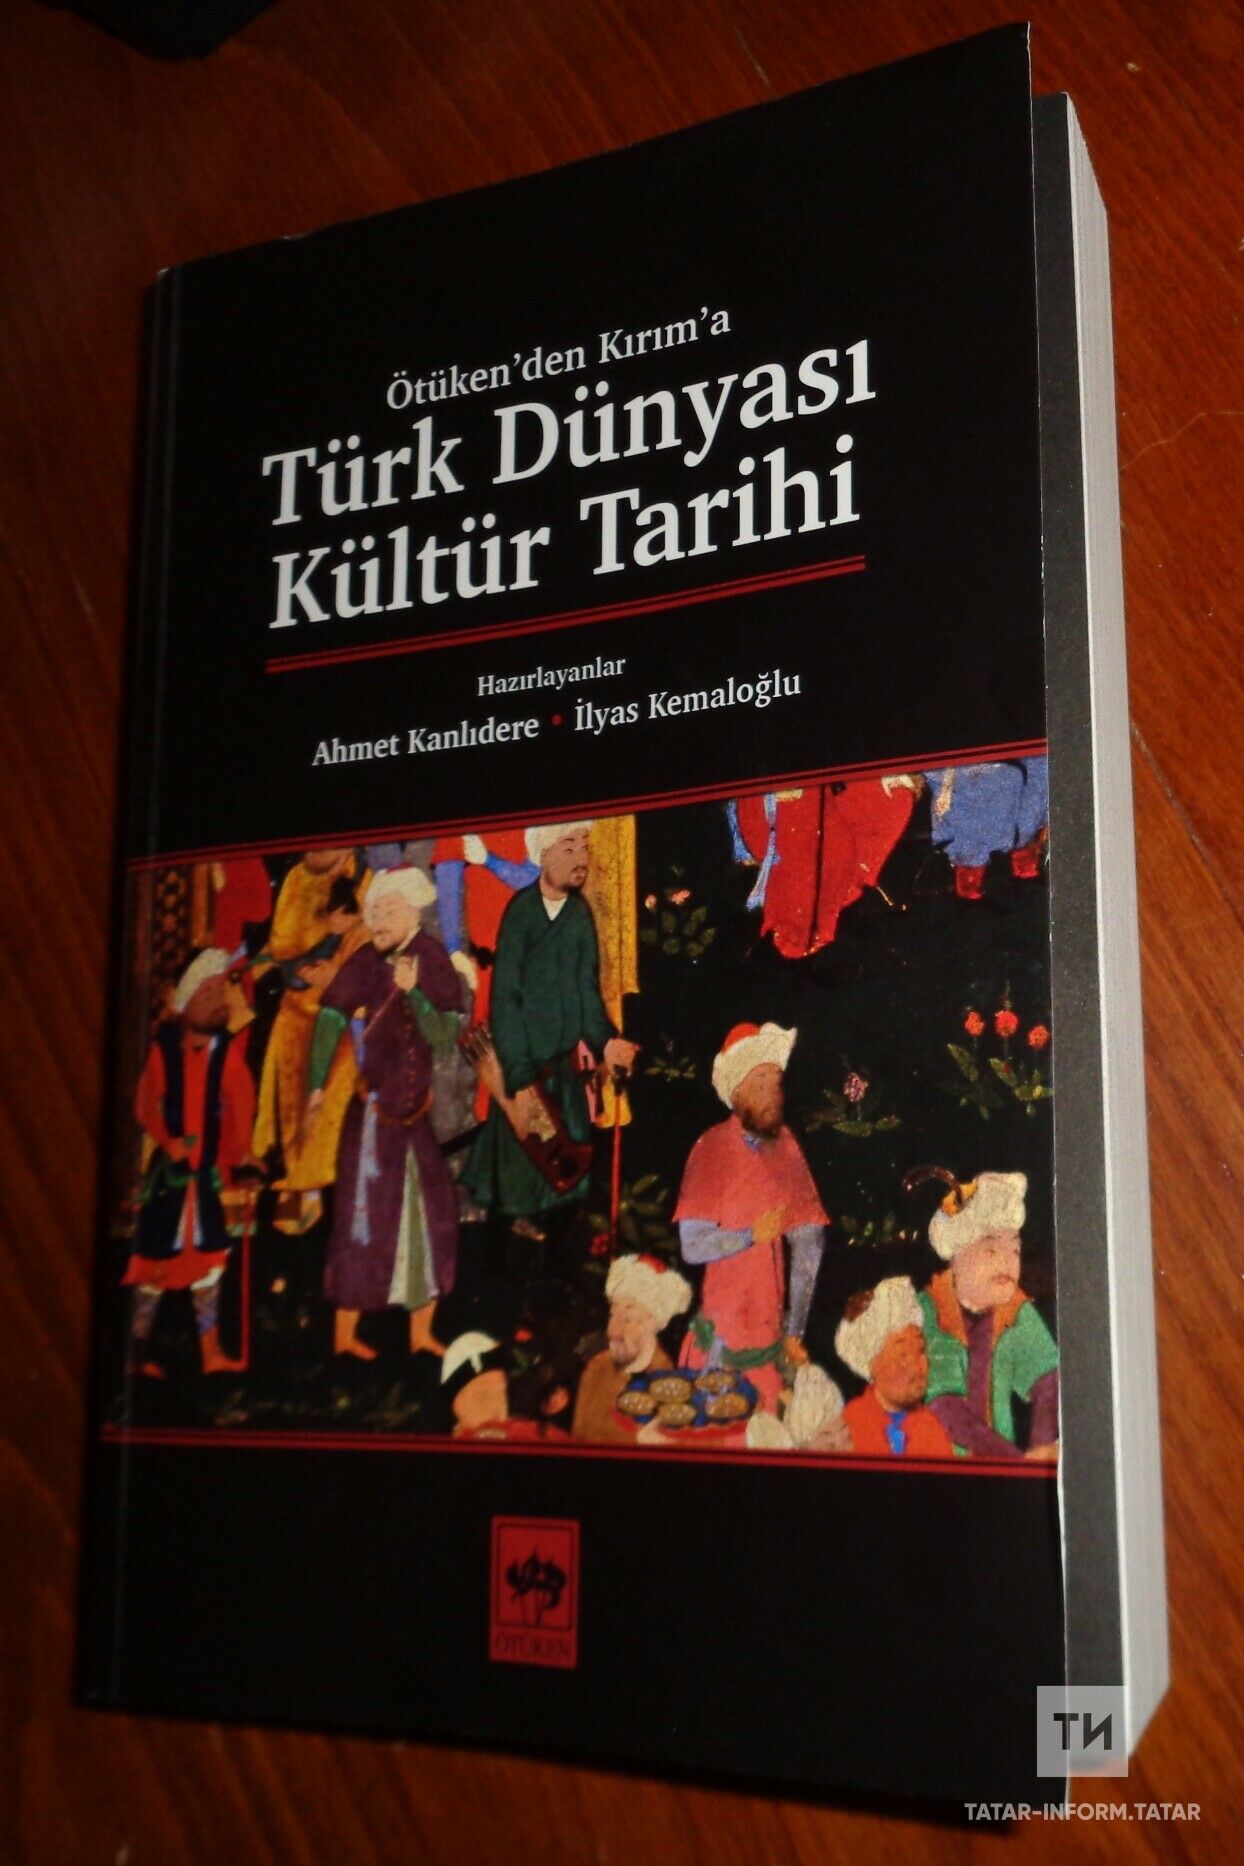 Төркиядә басылган китапта татар мәдәнияте тарихы яктыртылган